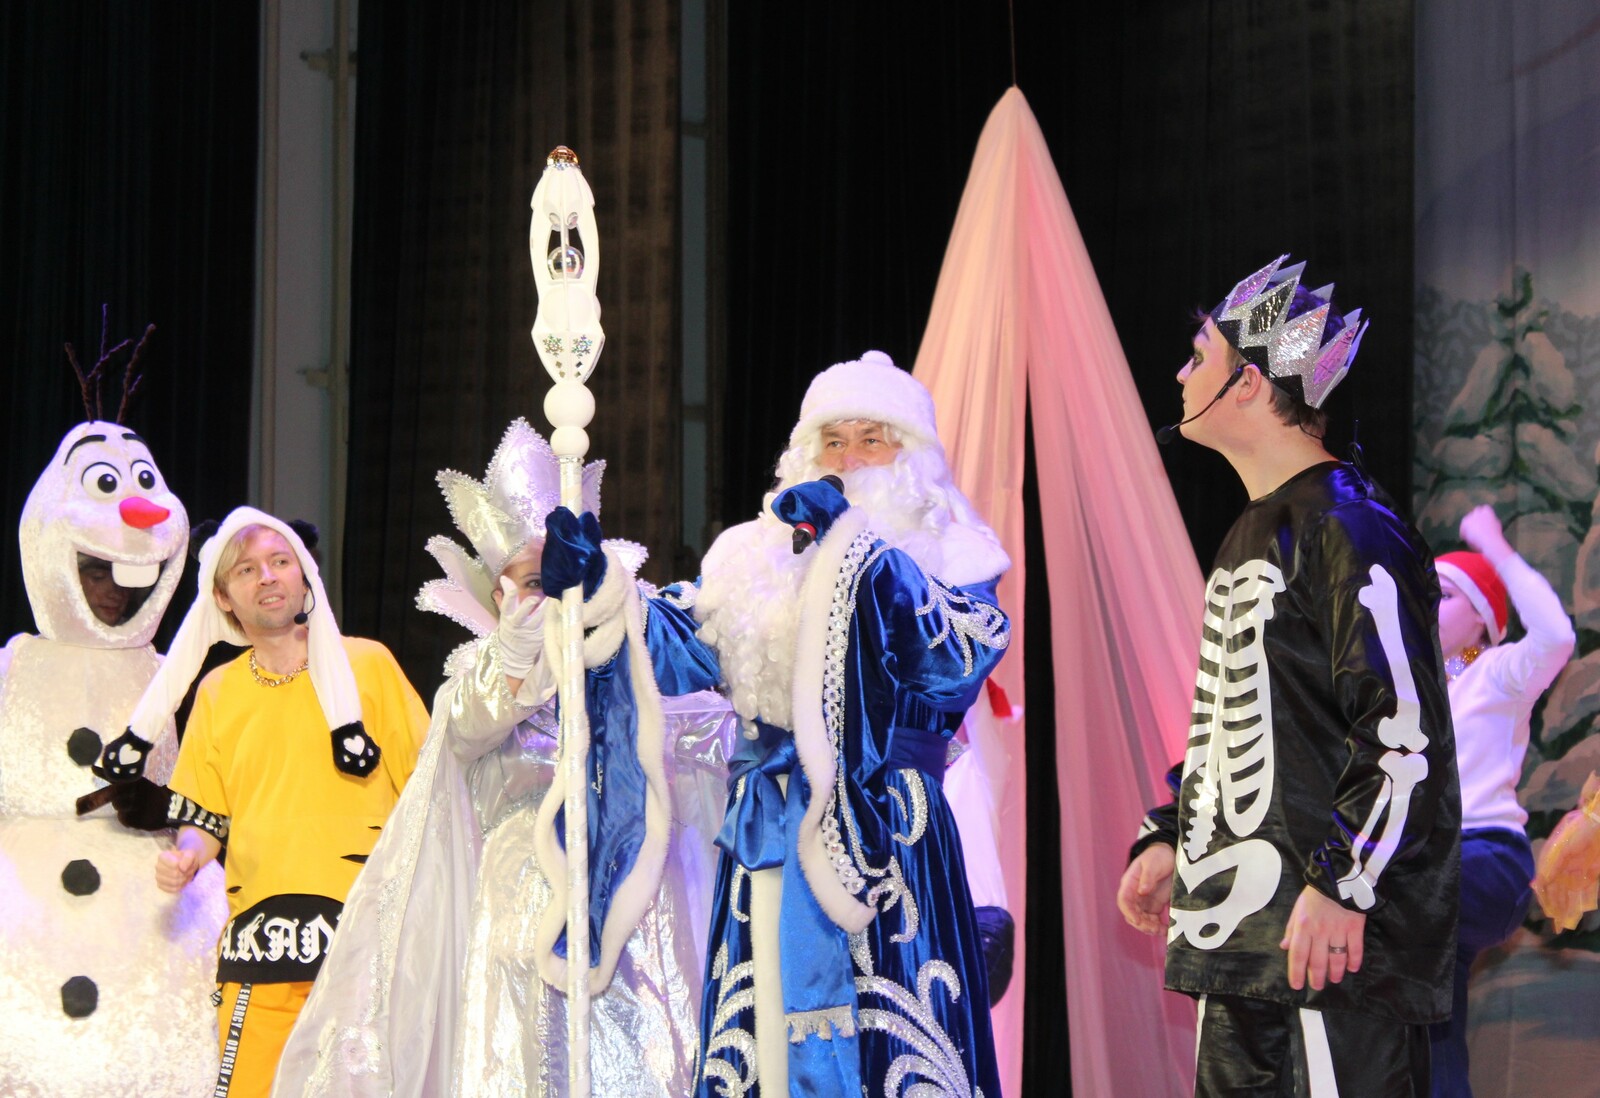 В Салавате поставили яркую театральную постановку  «Вовка в 3D-вятом царстве» для юных поклонников ТикТока и инстаграма